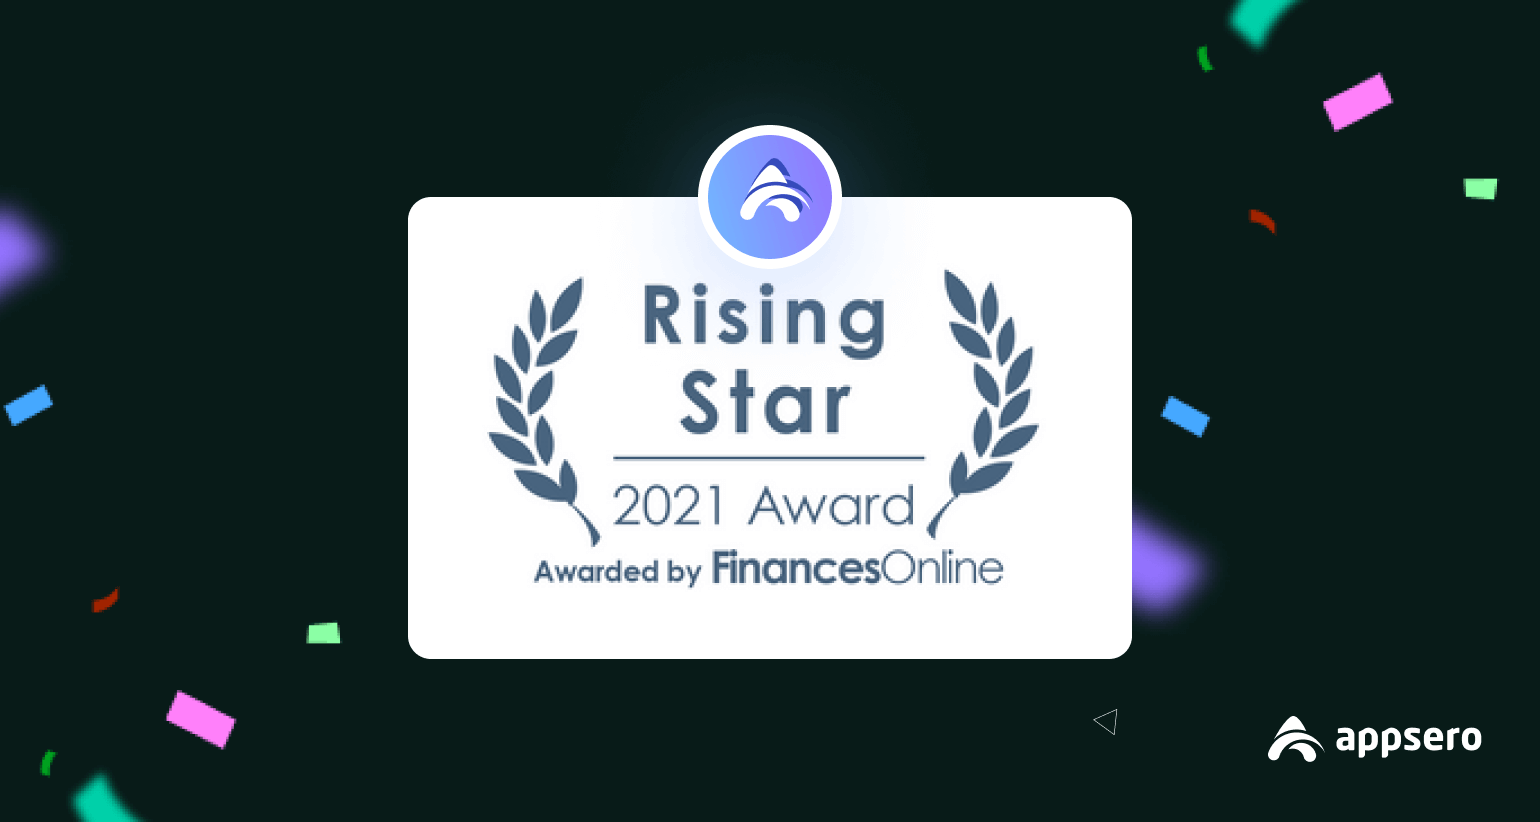 Appsero Earns PSA Rising Star Award 2021 From FinancesOnline